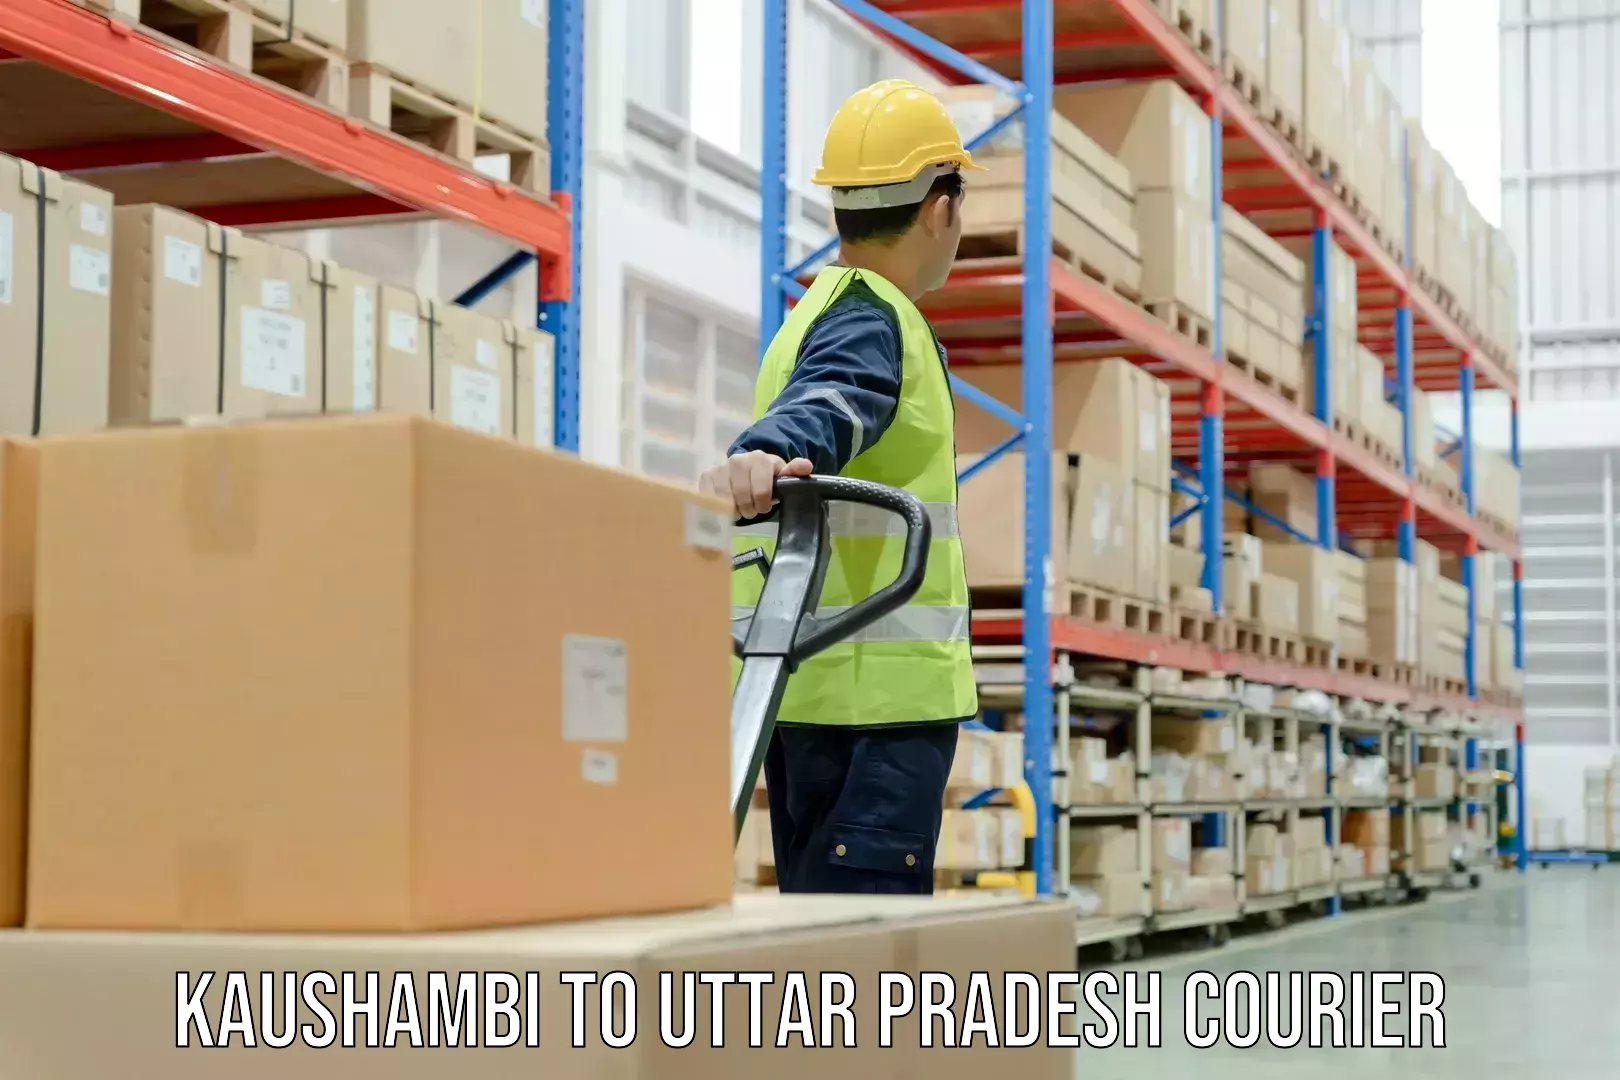 Cross-border shipping Kaushambi to Uttar Pradesh